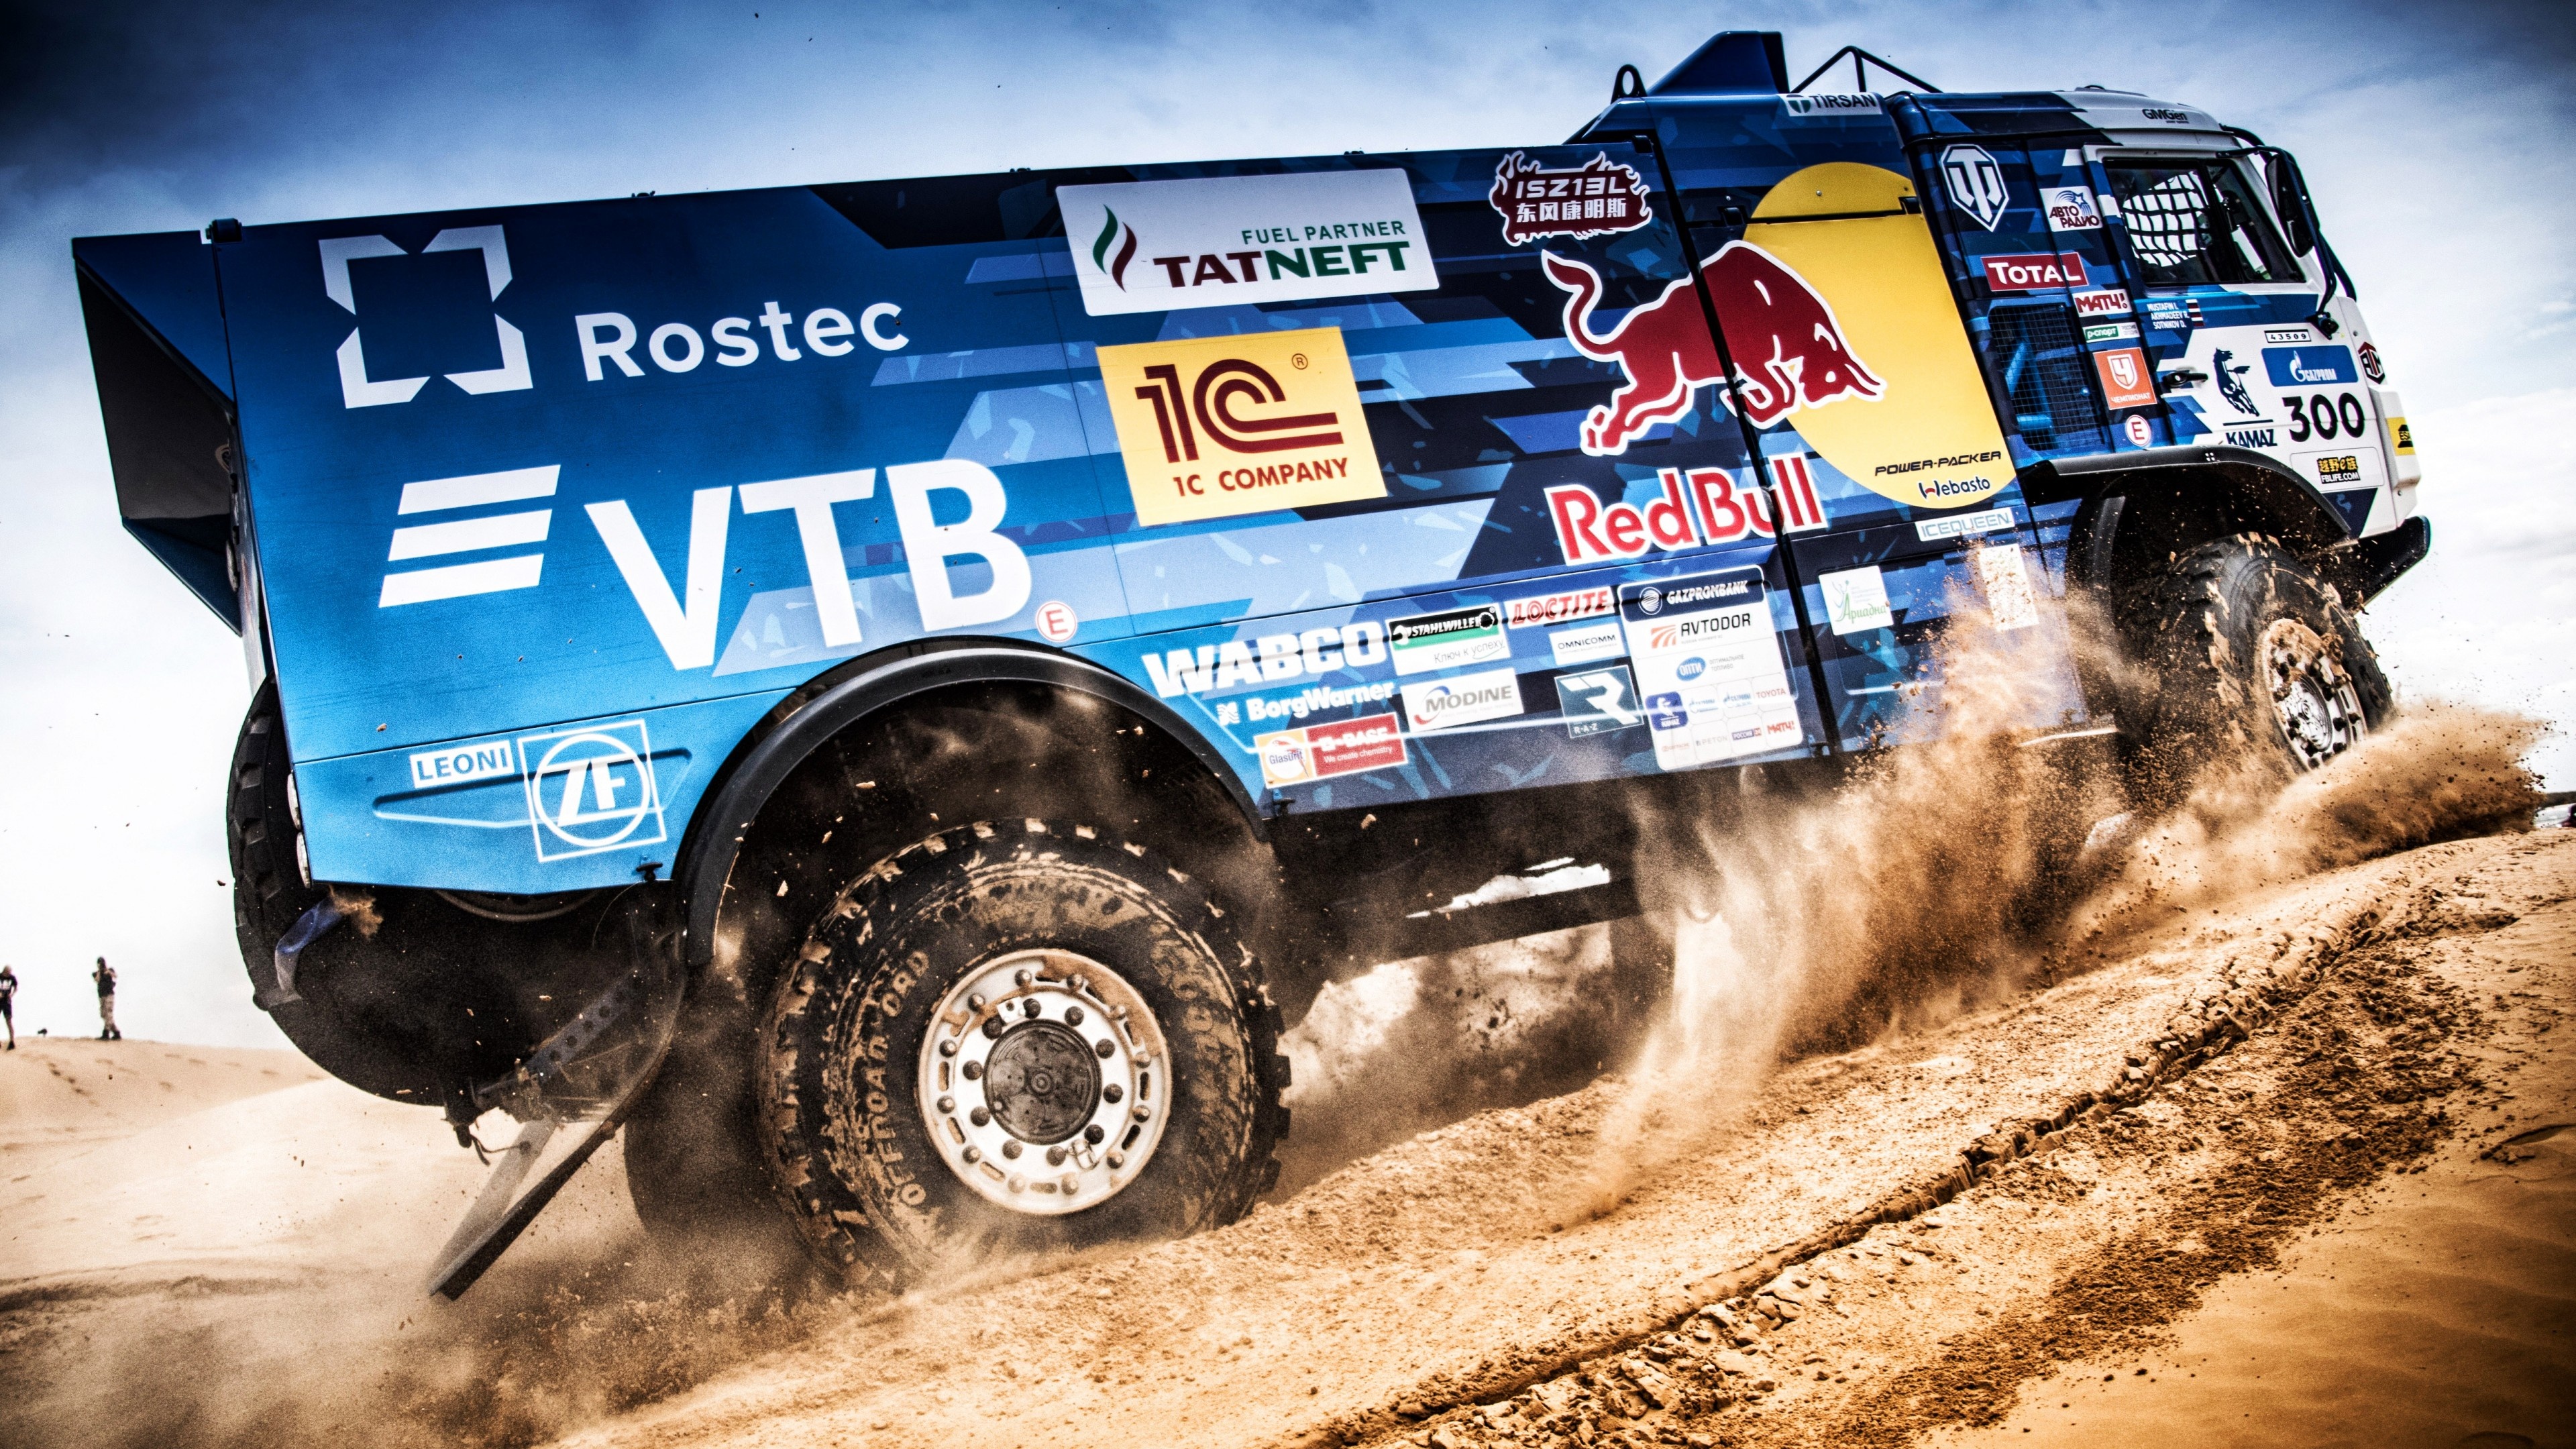 Dakar Rally: Dakar Desert Rally, Kamaz, VTB Team, Saudi Arabia, Race. 3840x2160 4K Background.